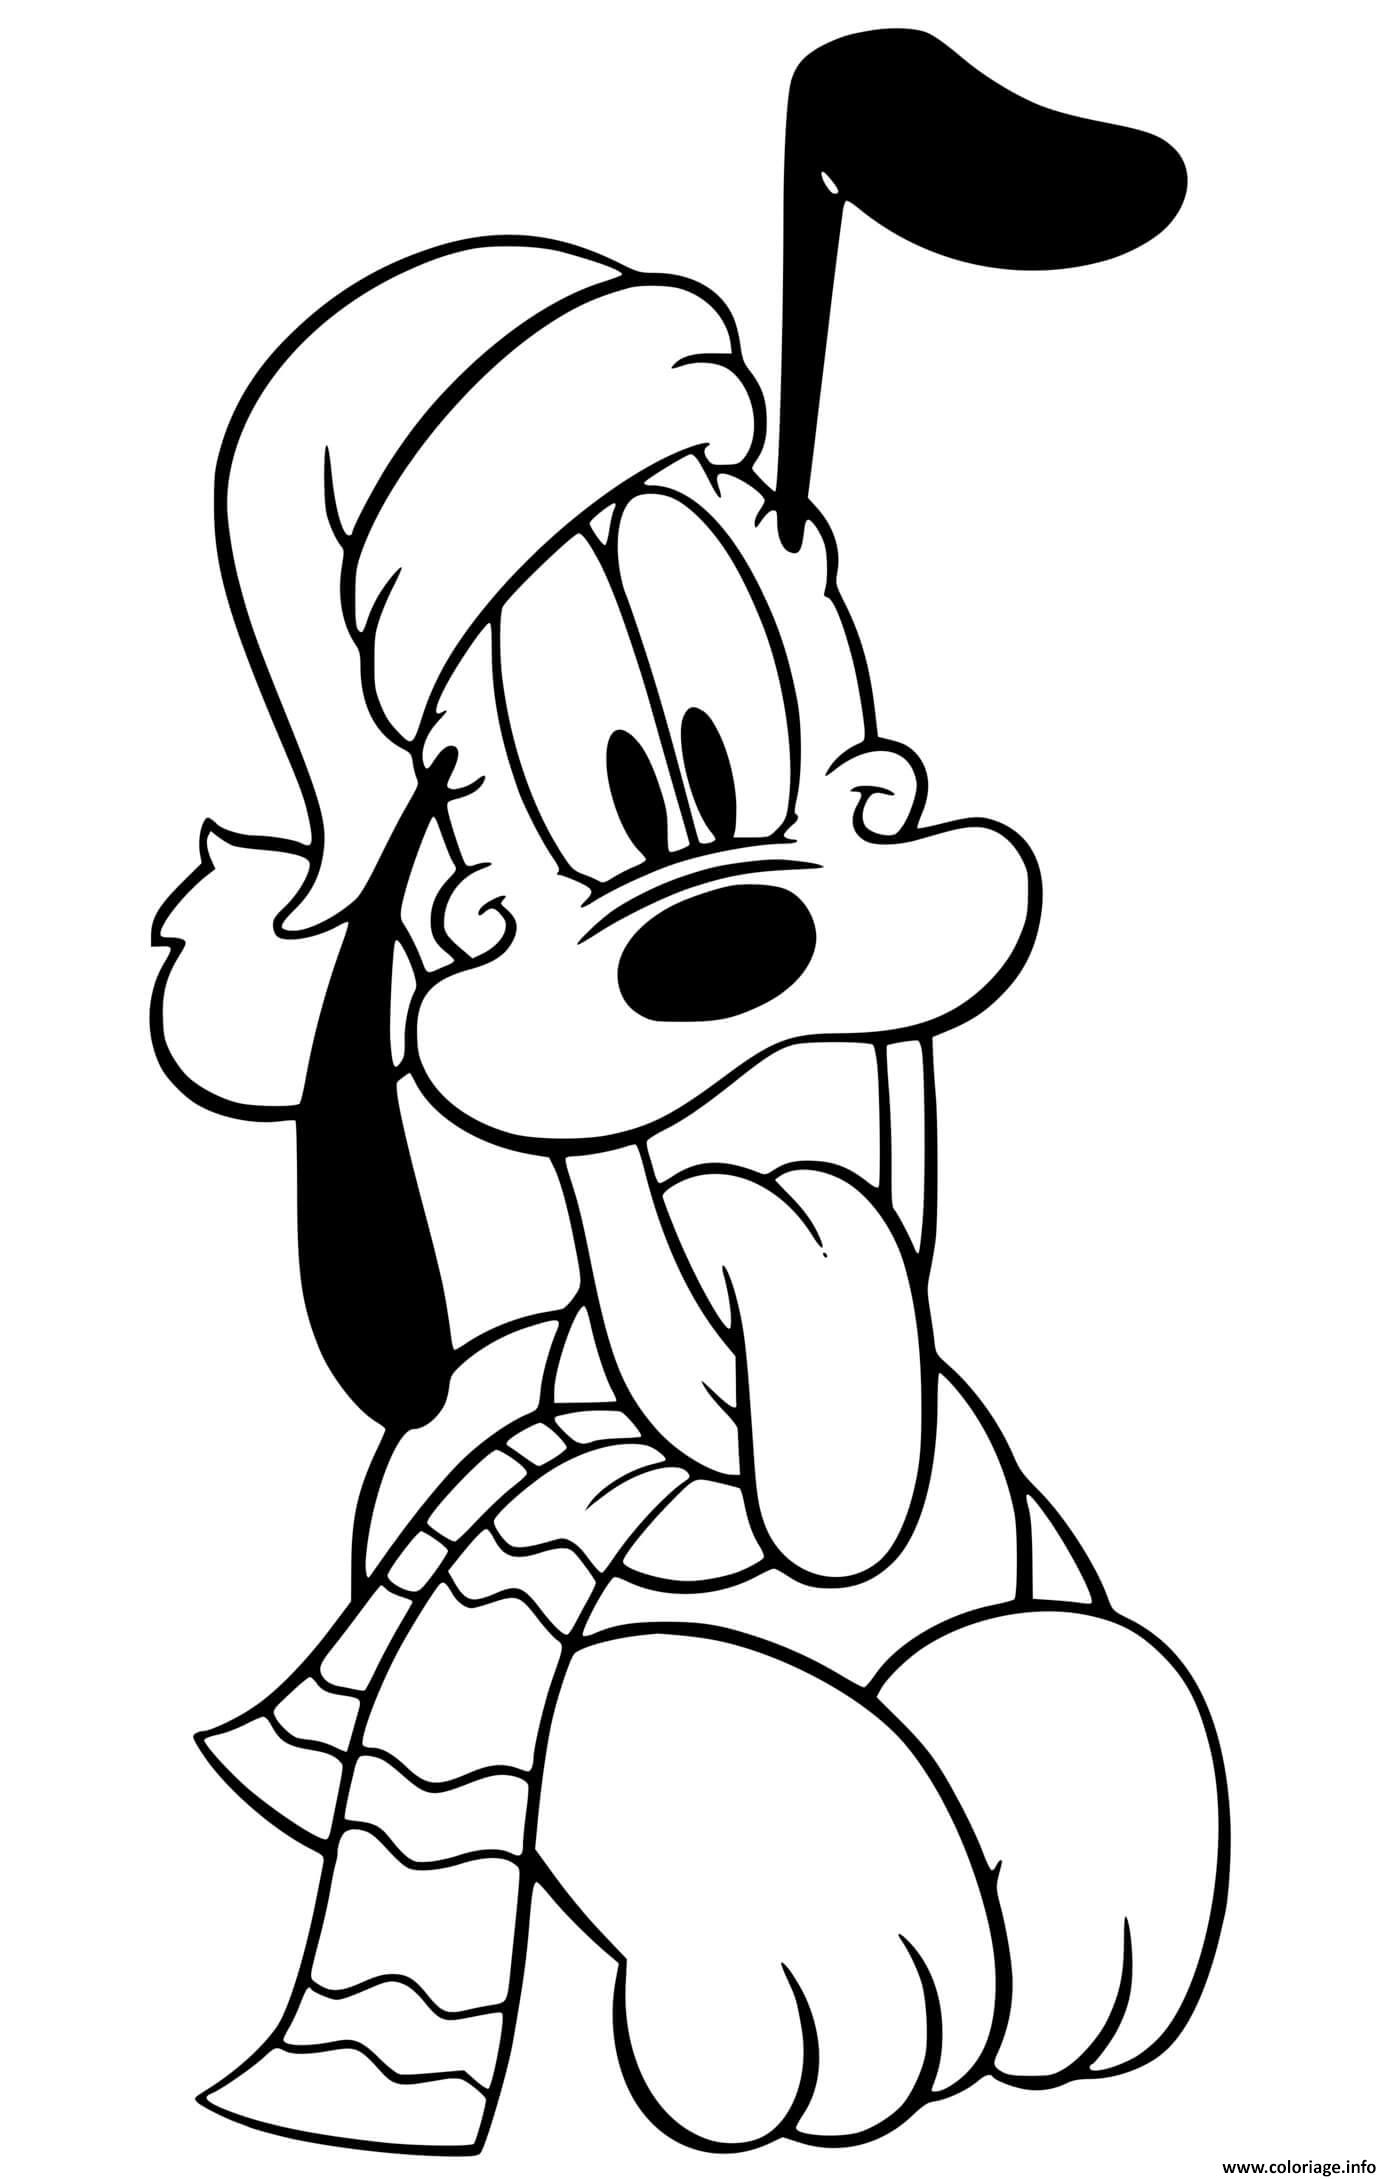 Coloriage Pluto Wearing Hat Scarf Dessin Noel Disney À Imprimer tout Coloriage Disney A Imprimer 